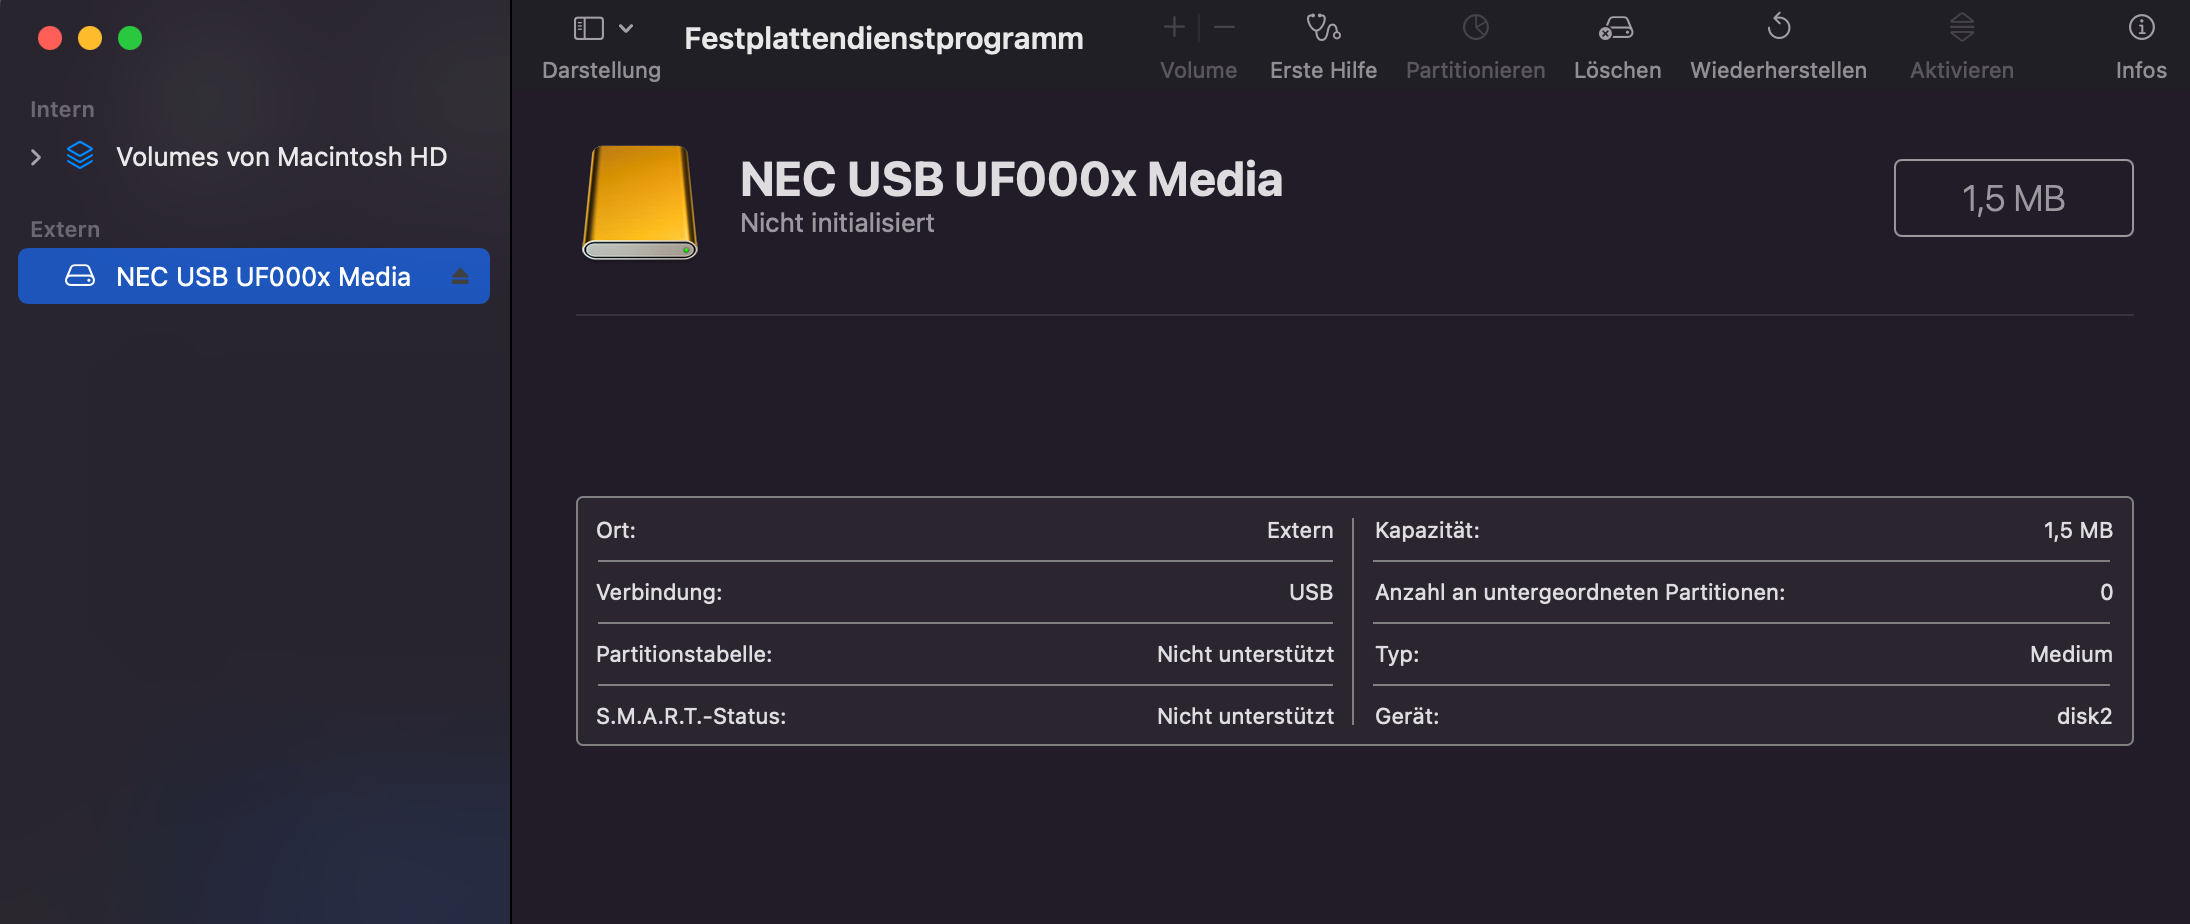 Die ist ein Screenshot vom Festplattendienstprogramm auf dem Mac. Das Gerät wird als "NEC USB UF000x Media" erkannt